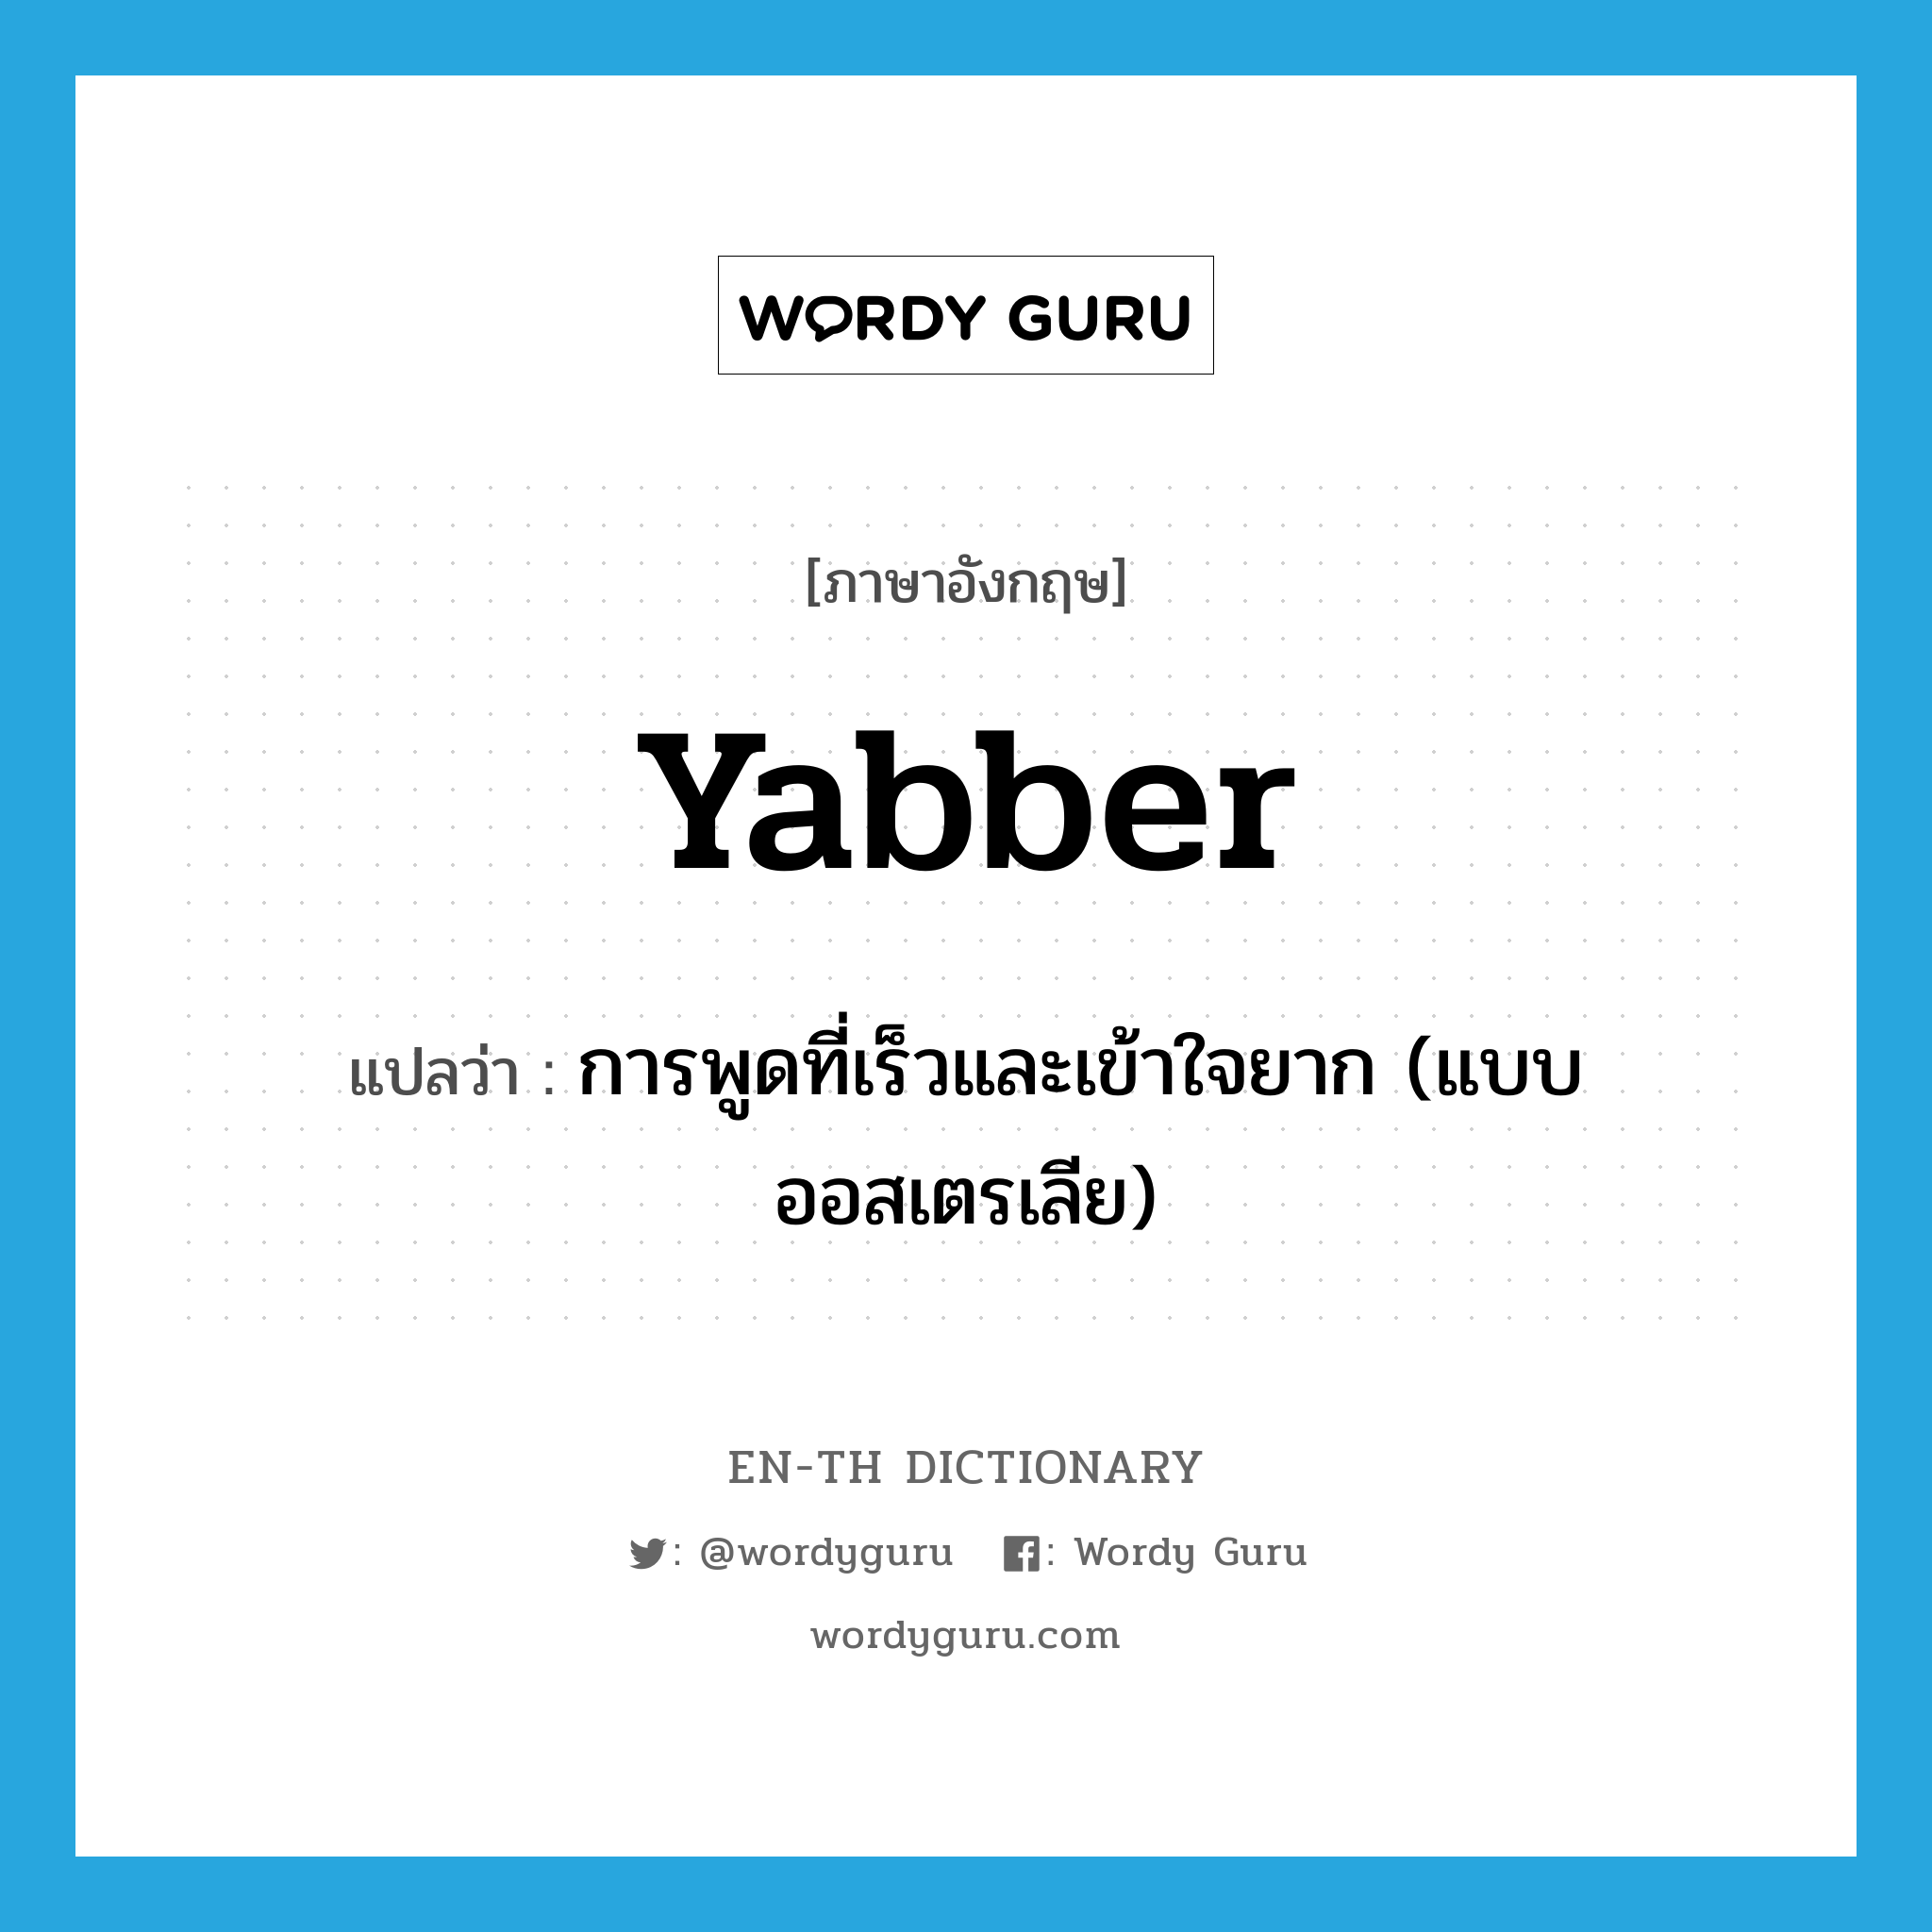 การพูดที่เร็วและเข้าใจยาก (แบบออสเตรเลีย) ภาษาอังกฤษ?, คำศัพท์ภาษาอังกฤษ การพูดที่เร็วและเข้าใจยาก (แบบออสเตรเลีย) แปลว่า yabber ประเภท N หมวด N